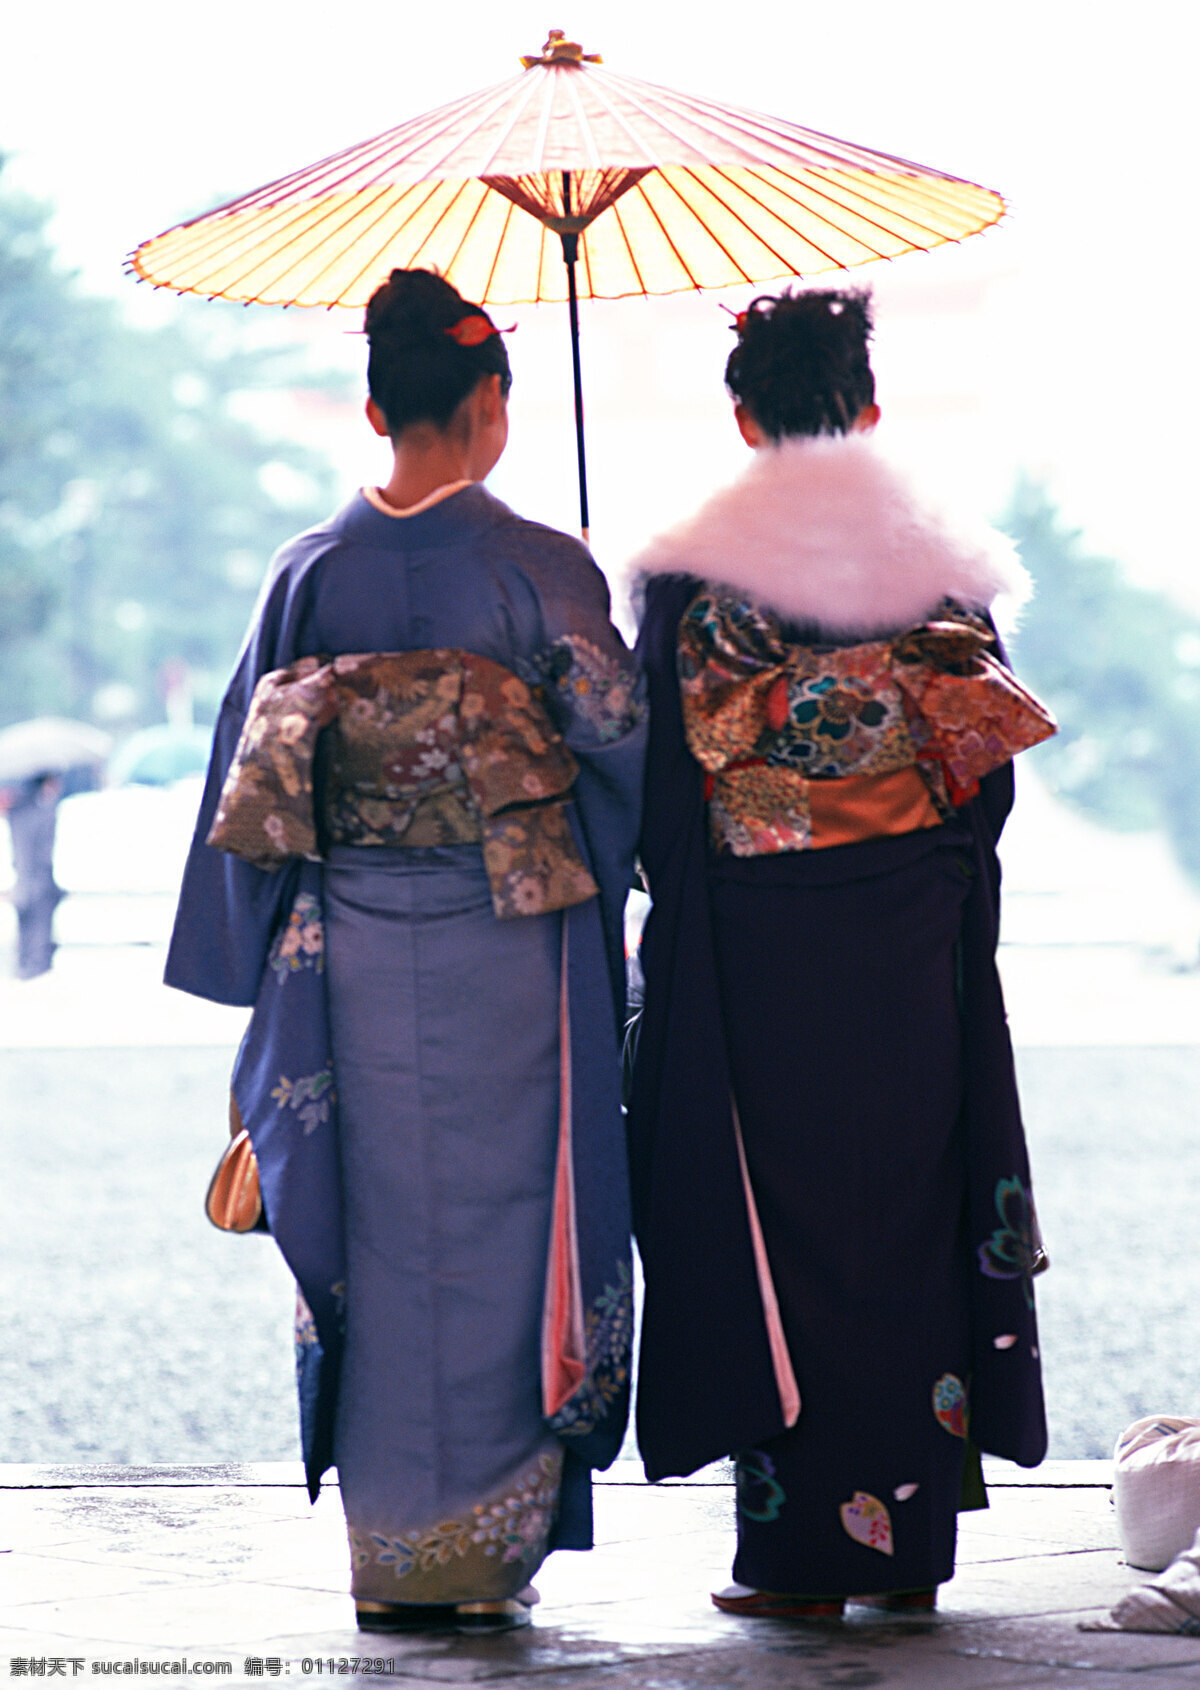 和服 艺术品 太阳伞 写真 传统文化 文化艺术